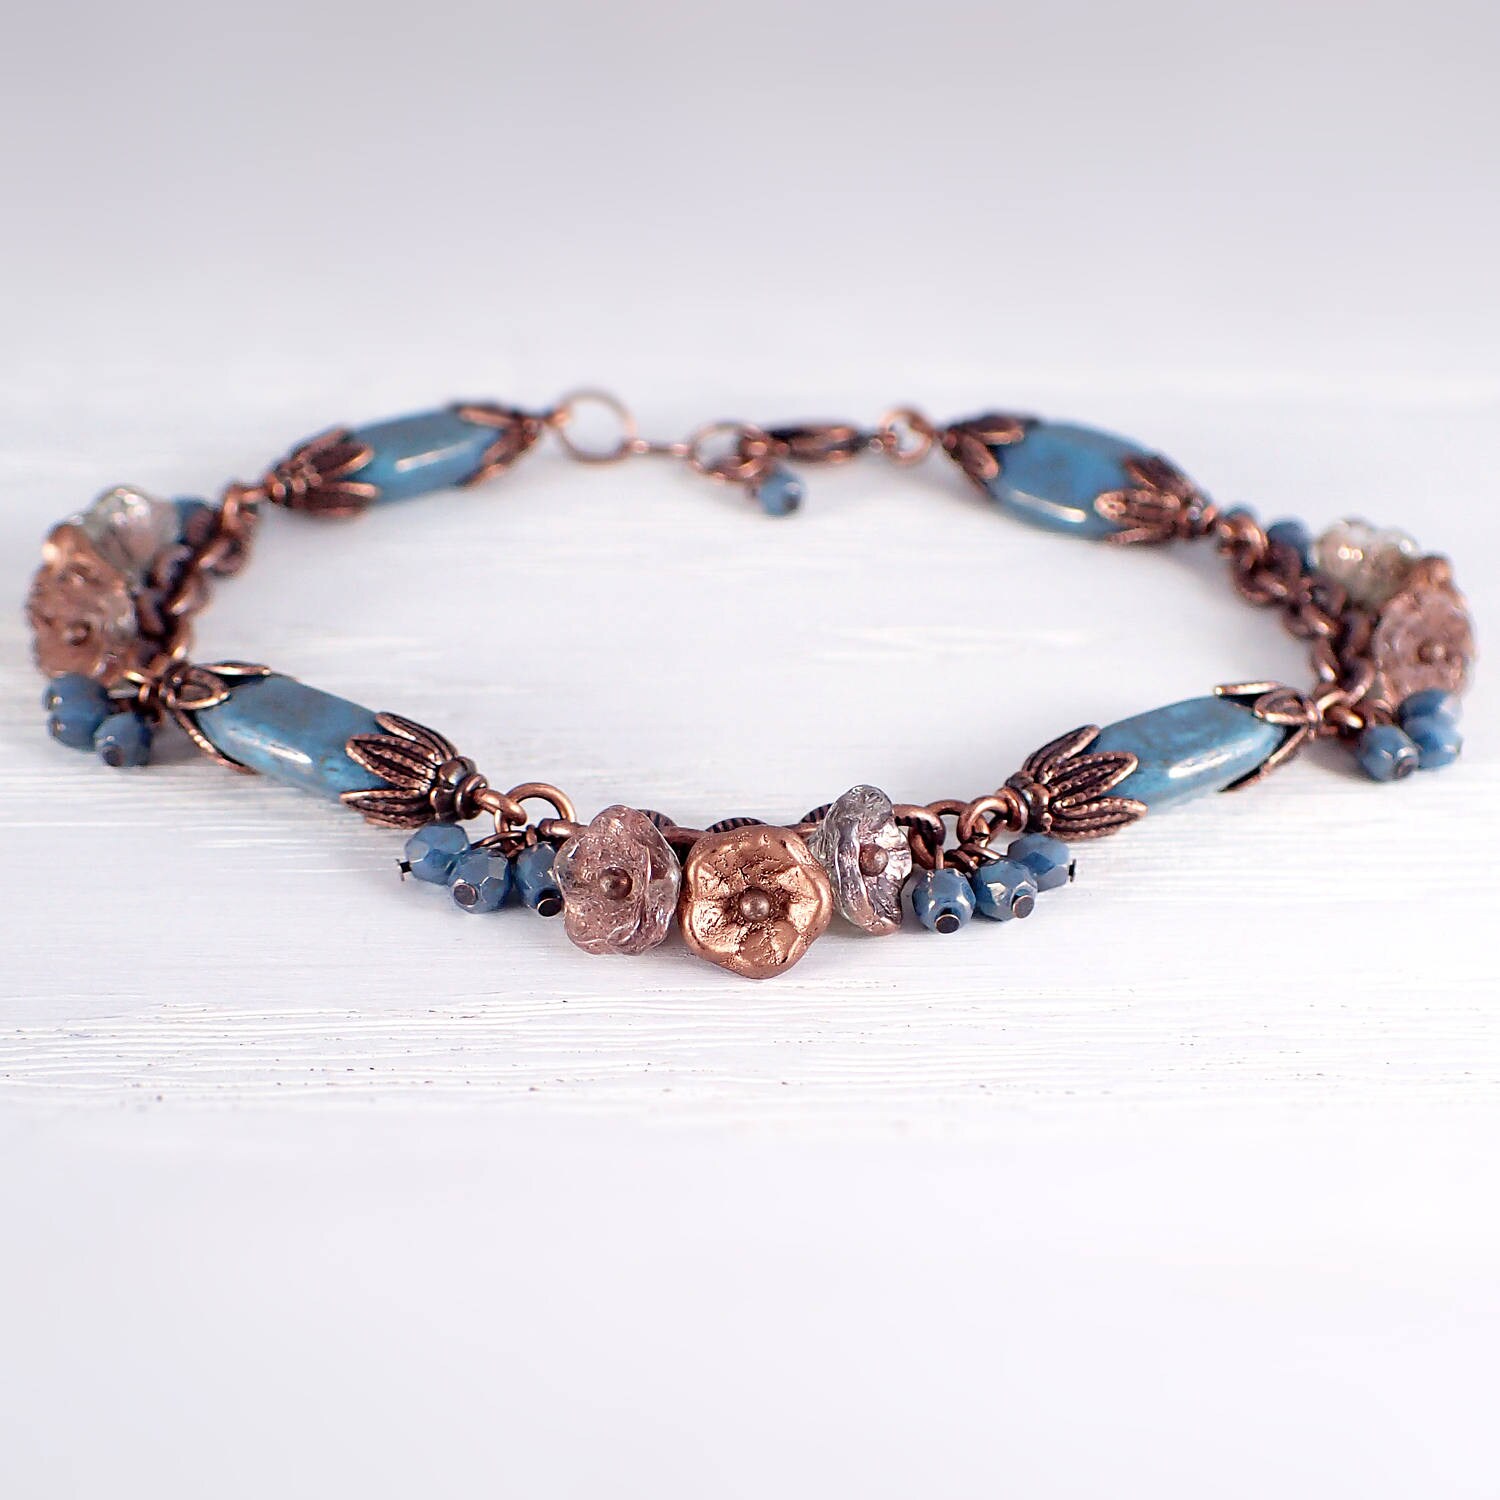 Flower Bead Cluster Bracelet Antique Copper and Blue Teal - Etsy UK